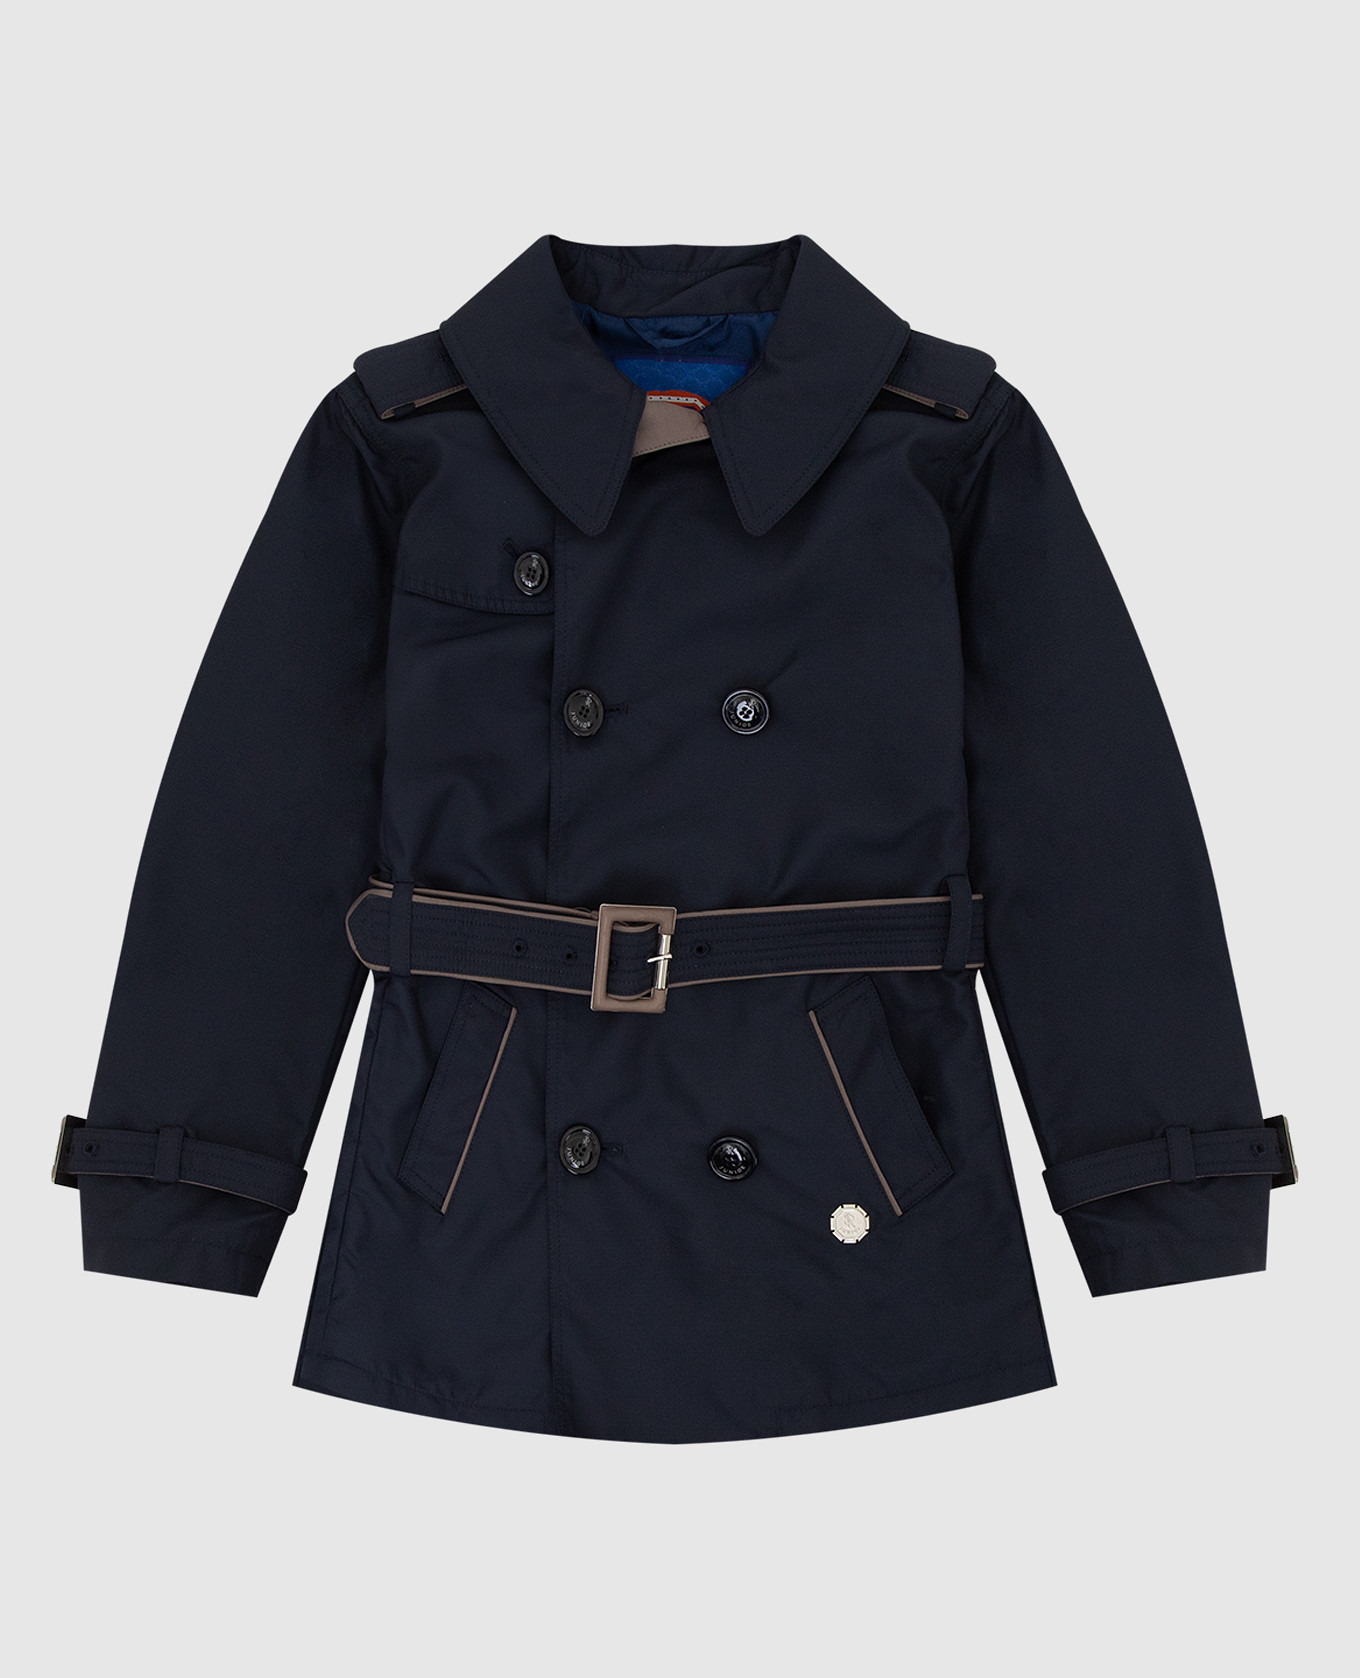 Children's navy blue trench coat